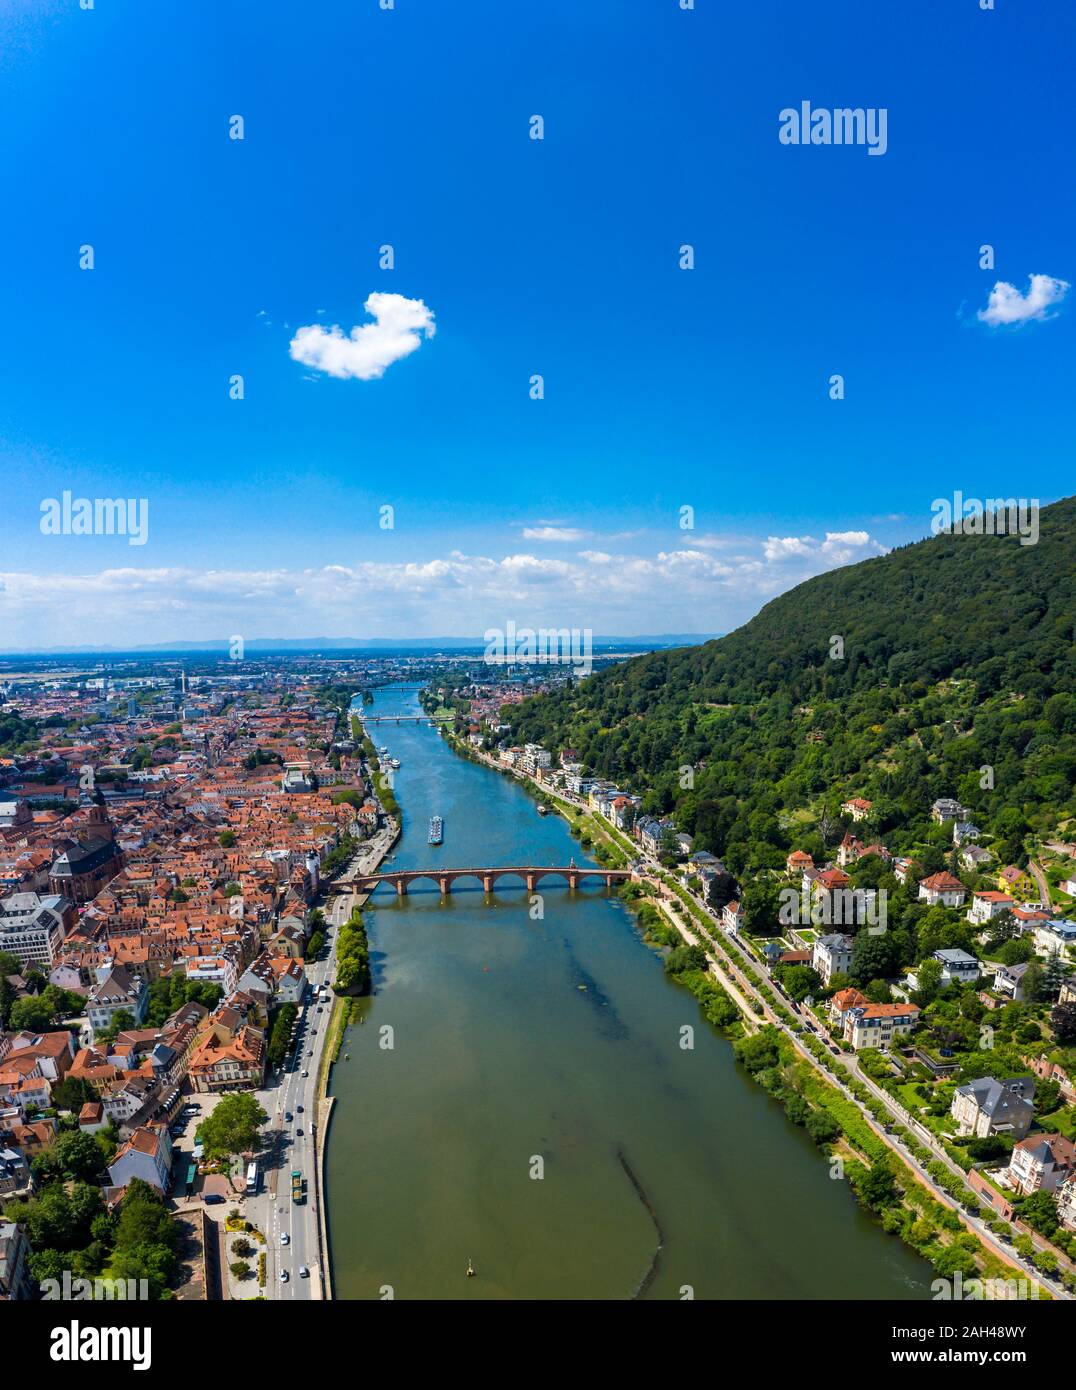 Germania, Baden-Württemberg, Heidelberg, la città vecchia e il ponte sul fiume Neckar in estate Foto Stock